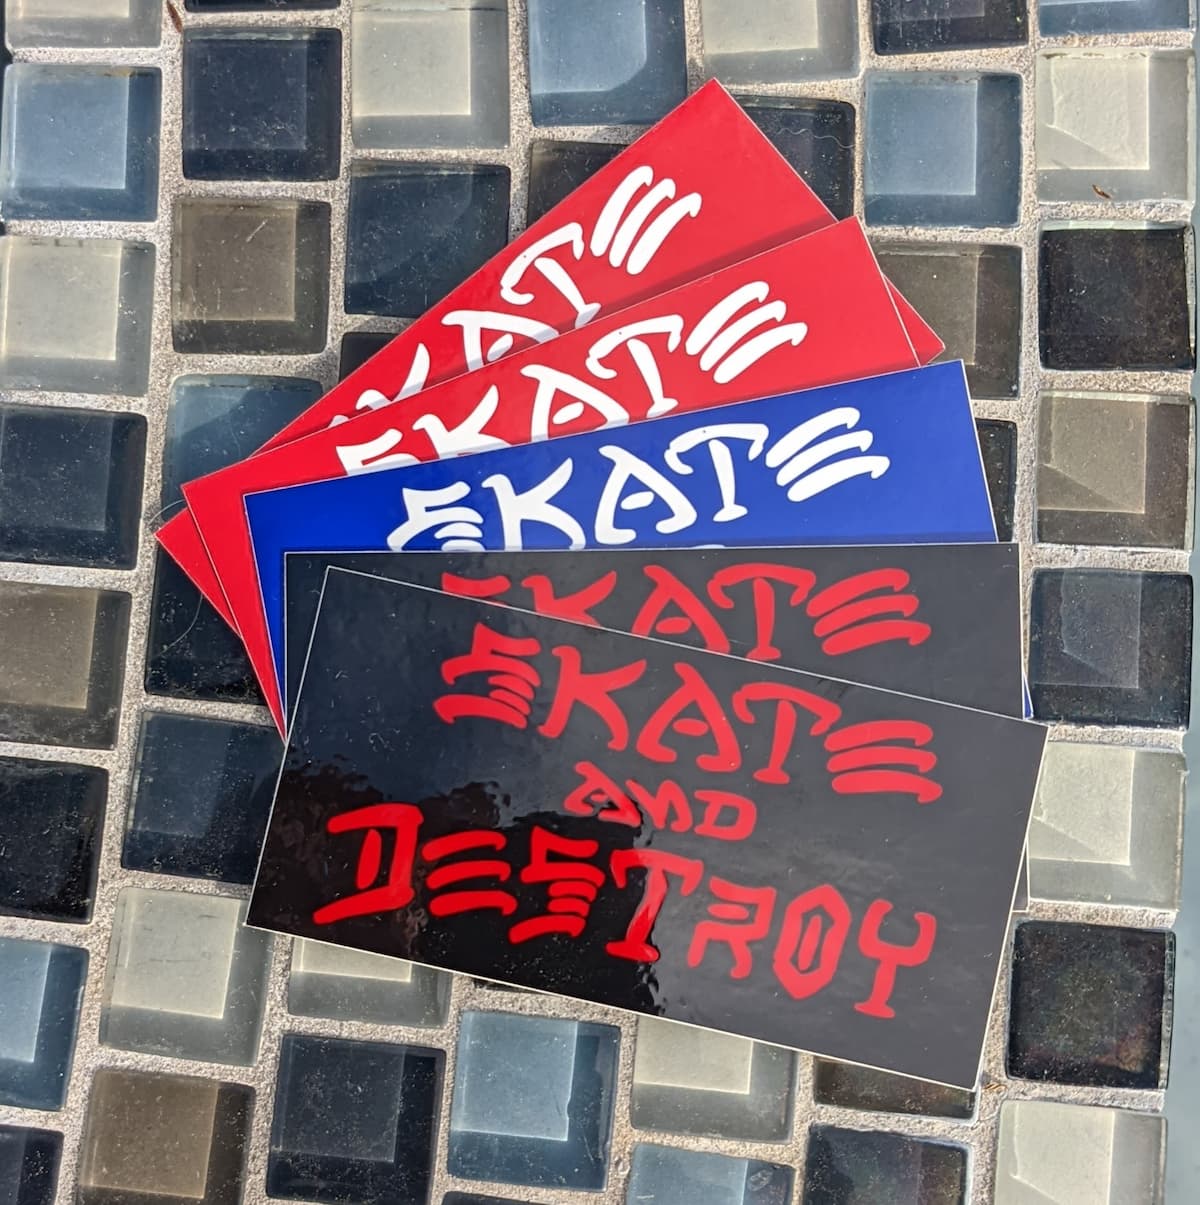 Thrasher Magazine – Skate and Destroy Sticker